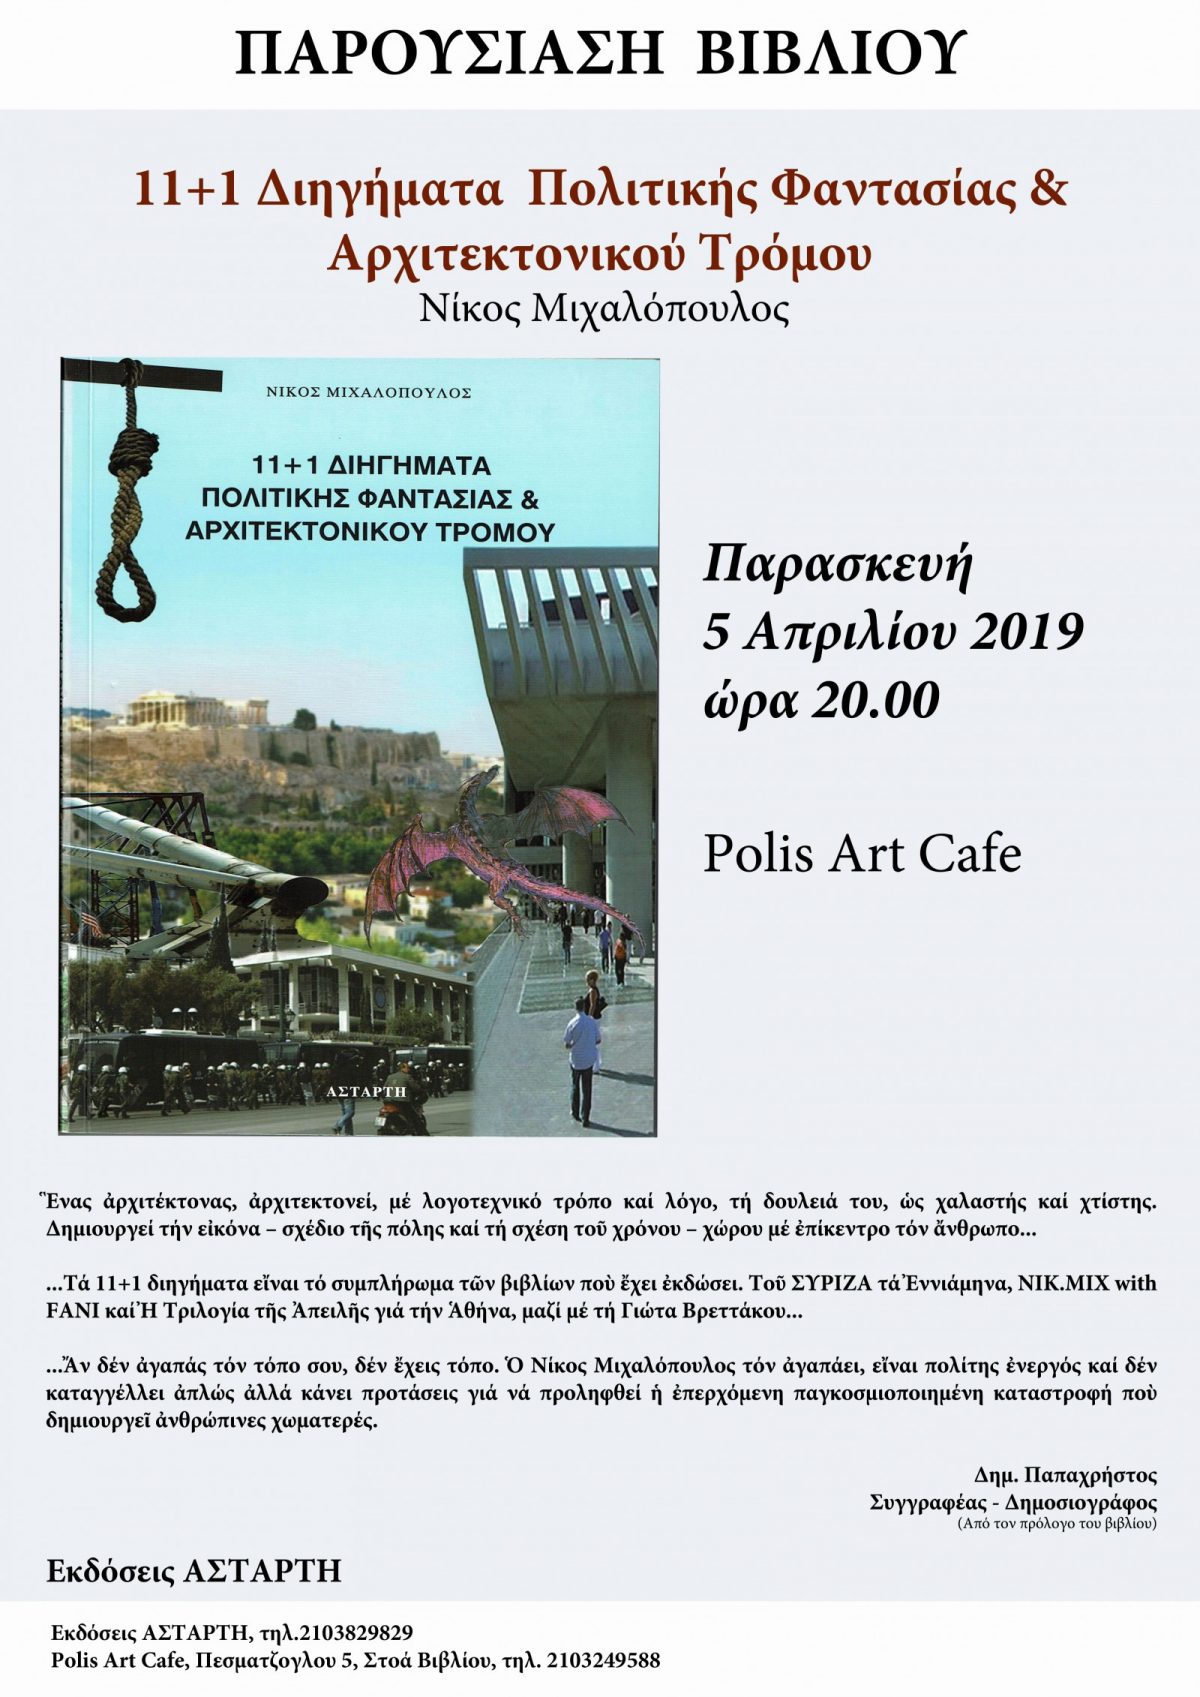 Πρόσκληση σε Παρουσίαση βιβλίου «11+1 Διηγήματα Πολιτικής Φαντασίας & Αρχιτεκτονικού Τρόμου», Παρασκευή 5.4.2019,  ώρα 20:00 στο Polis Art Café